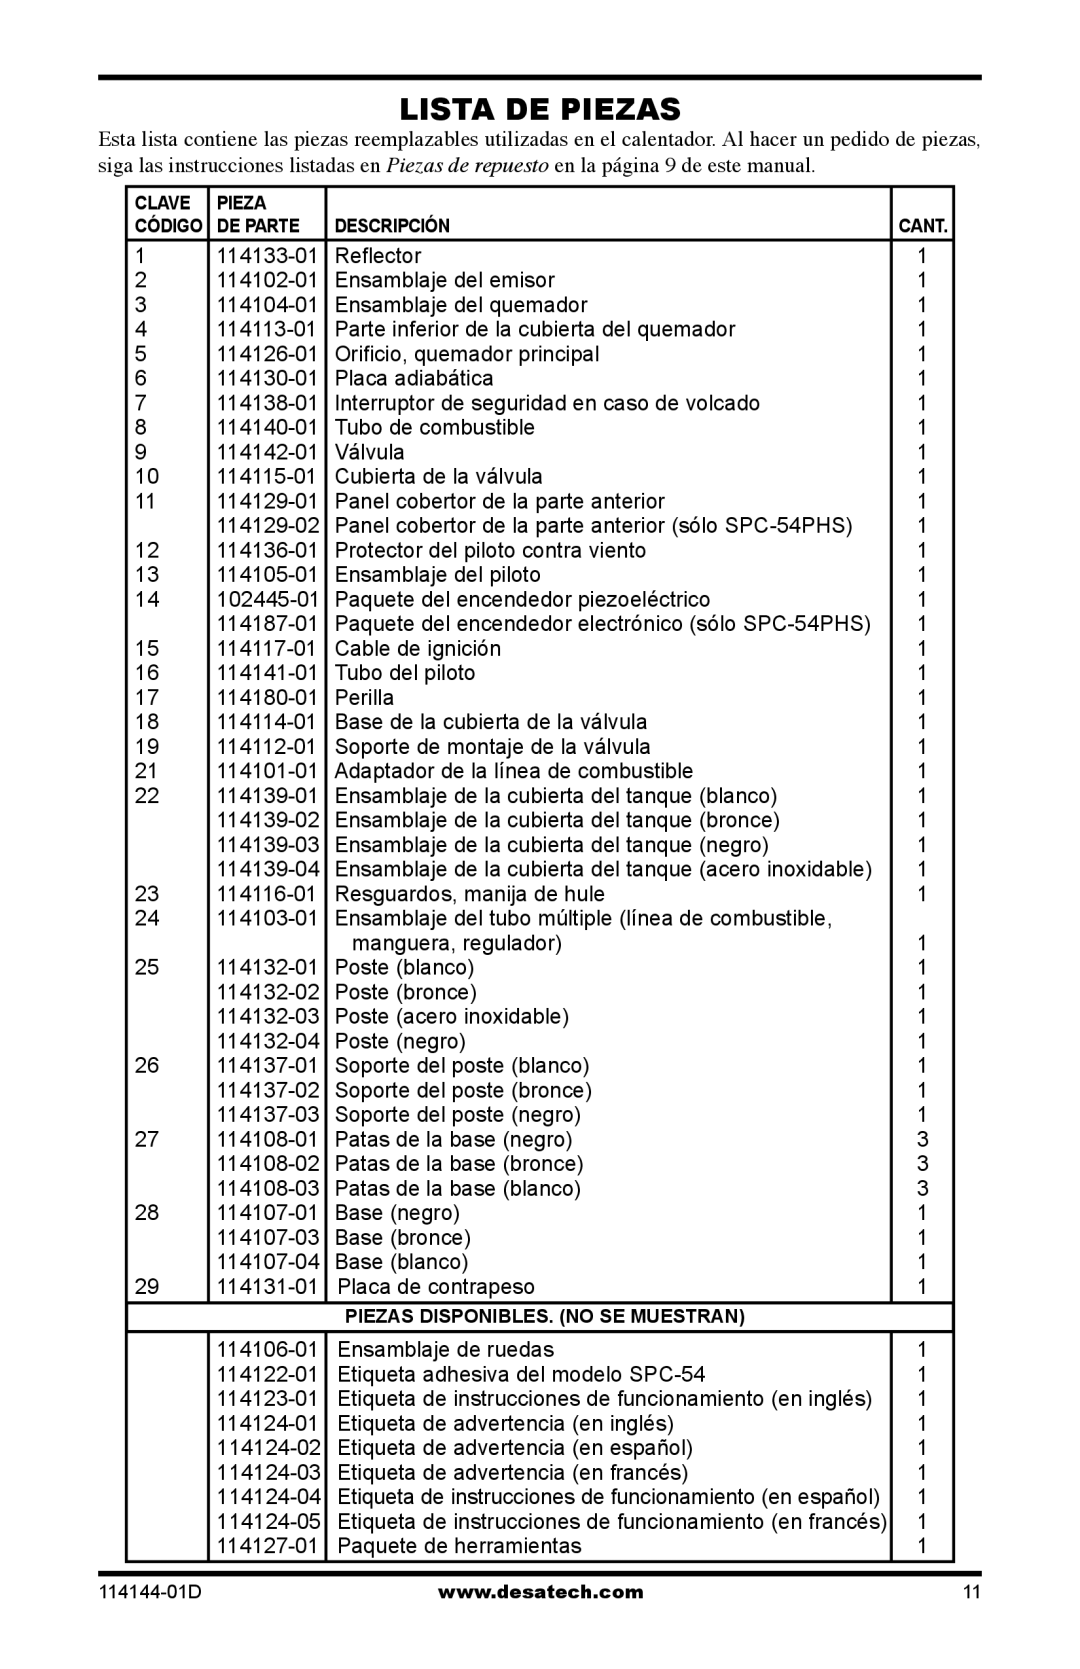 Desa SPC-54PHB, SPC-54PHS, SPC-54PHT owner manual Lista De Piezas 